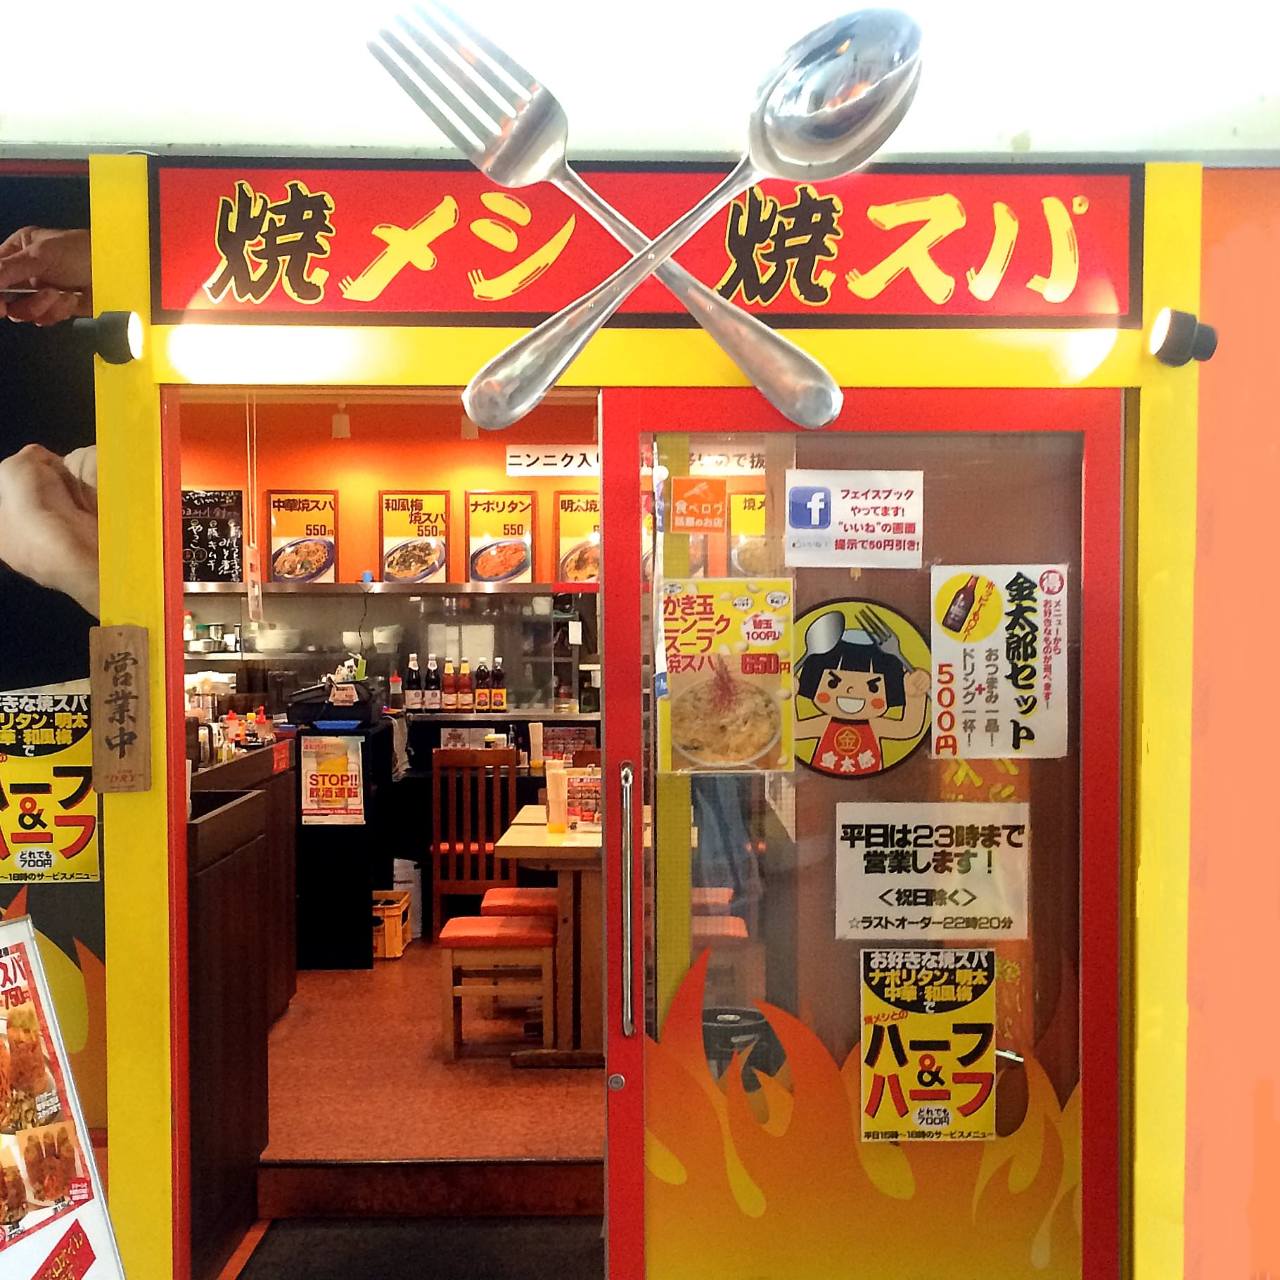 黄色と赤のデザインにスプーンとフォークが飾られた「焼メシ焼スパ 金太郎」の入口